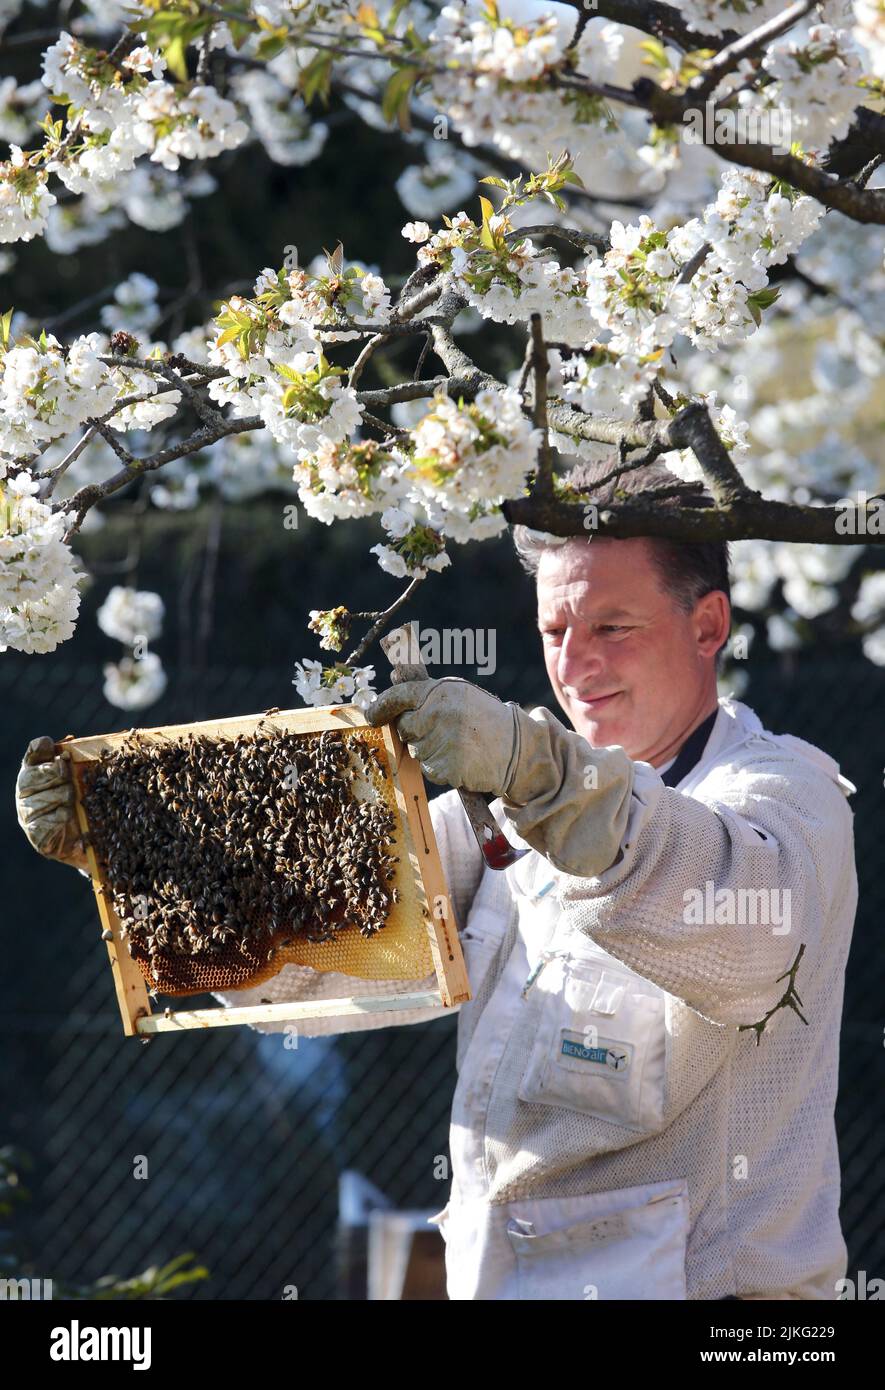 17.04.2022, Germania, Brandeburgo, Neuenhagen - Beekeeper che guarda sotto un albero di ciliegio blu ad un nido d'ape della sua colonia di api. 00S220417D340CAROEX.JPG [M Foto Stock